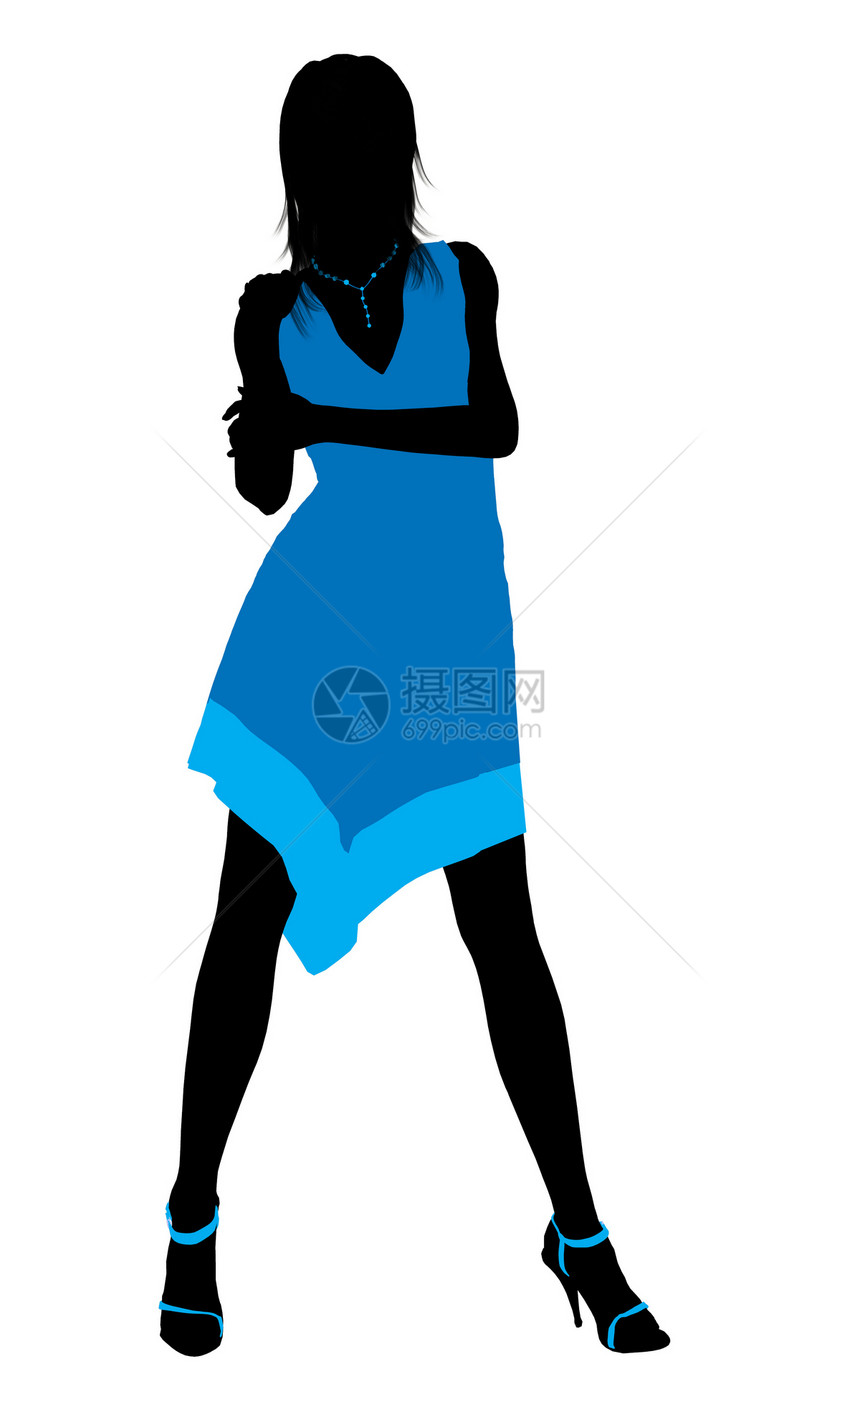 时装女性说明  轮光高跟鞋女士黑色裙子剪影棕色项链插图蓝色图片